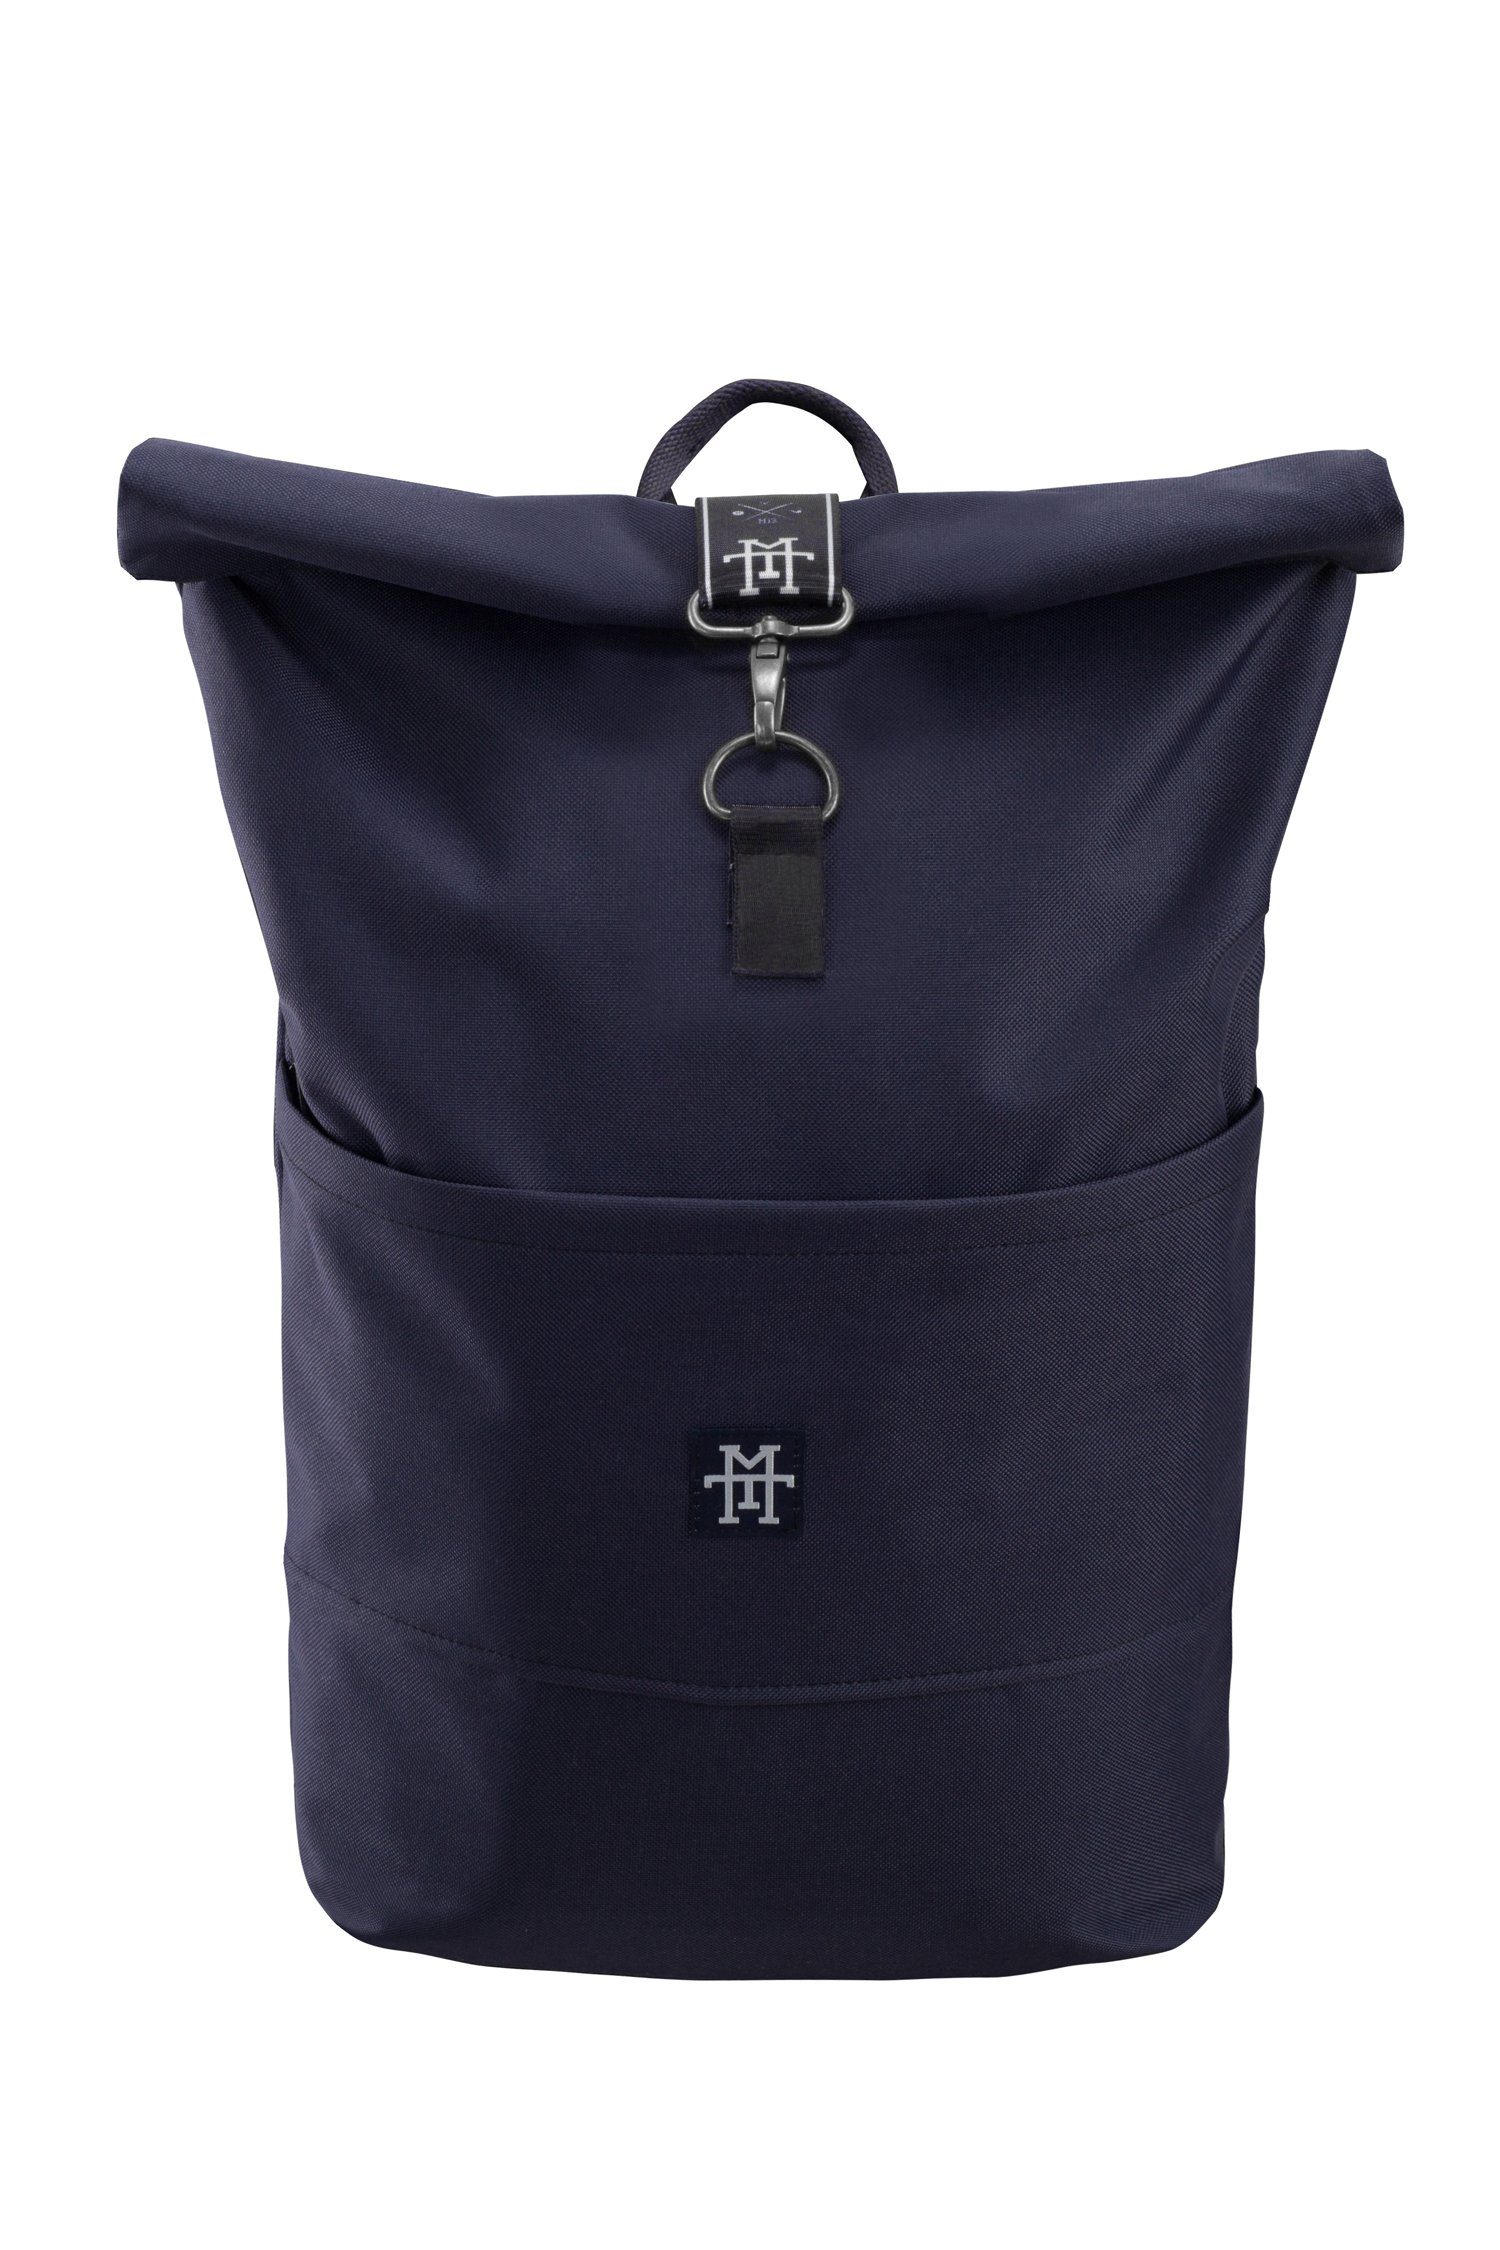 Backpack Taped mit Navy Gurte Roll-Top wasserdicht/wasserabweisend, verstellbare - Rollverschluss, Edition Rucksack Tagesrucksack Manufaktur13